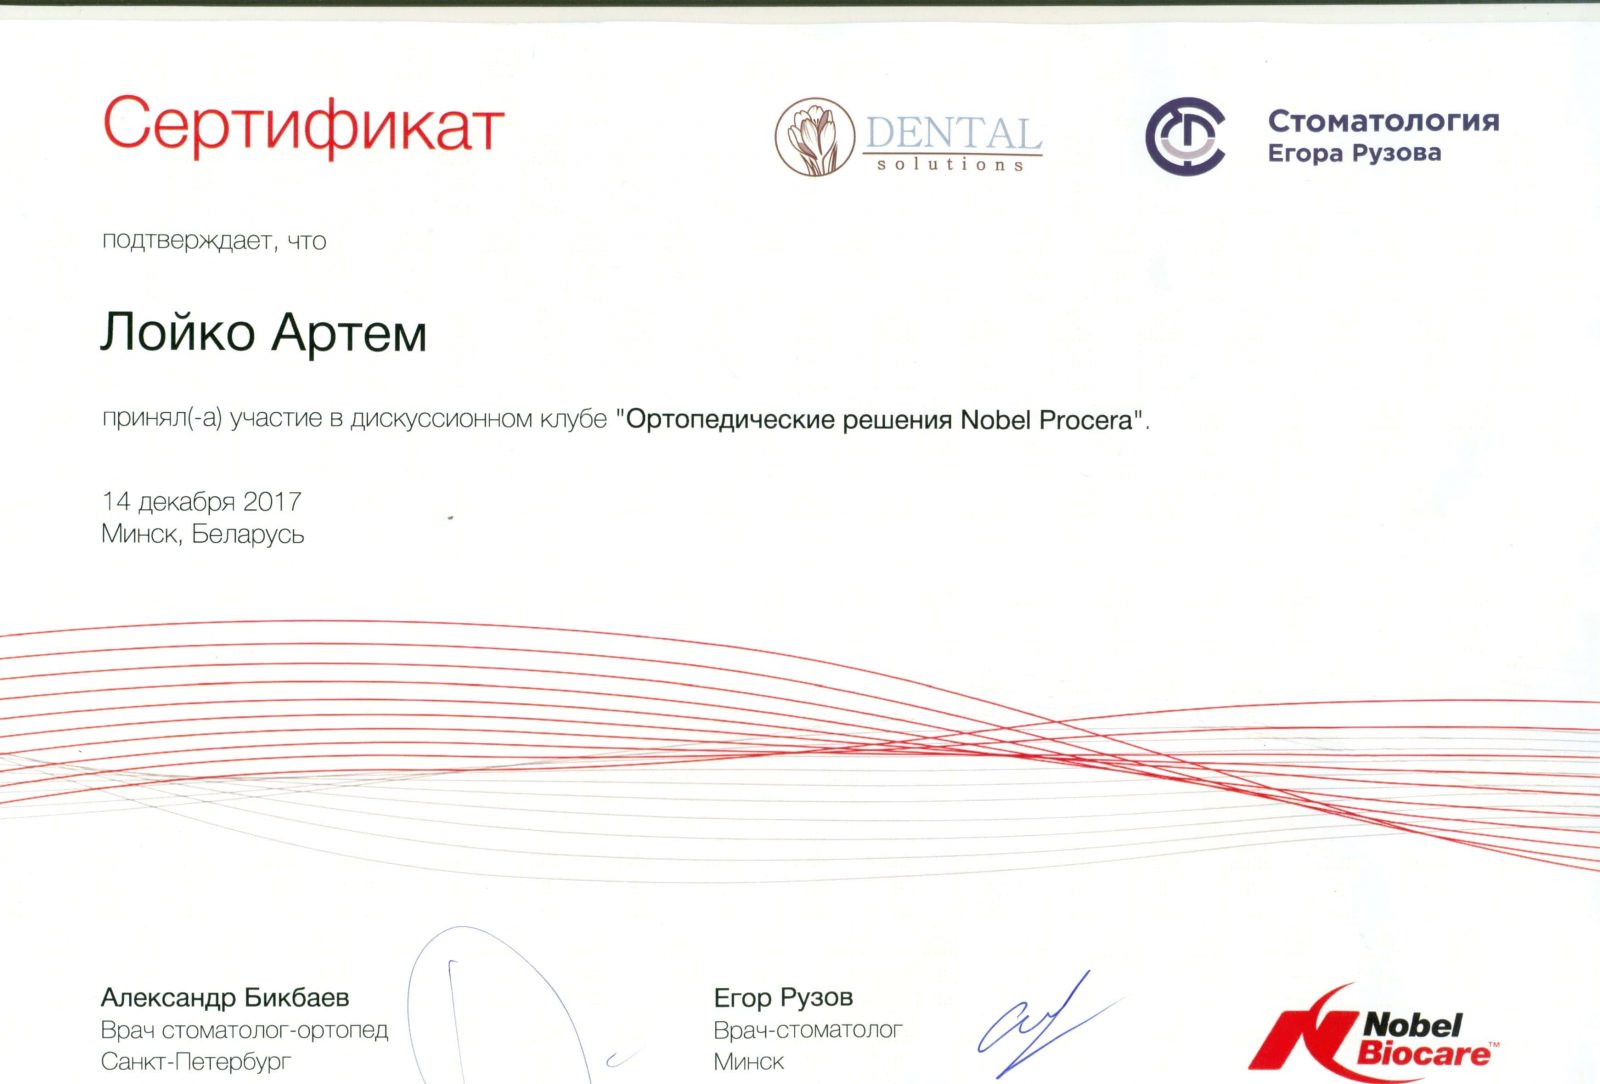 Für die Teilnahme am Diskussionsclub wurde Artem Loiko ein Nobel Biocare Zertifikat ausgestellt. Orthopädische Lösungen Nobel Procera.